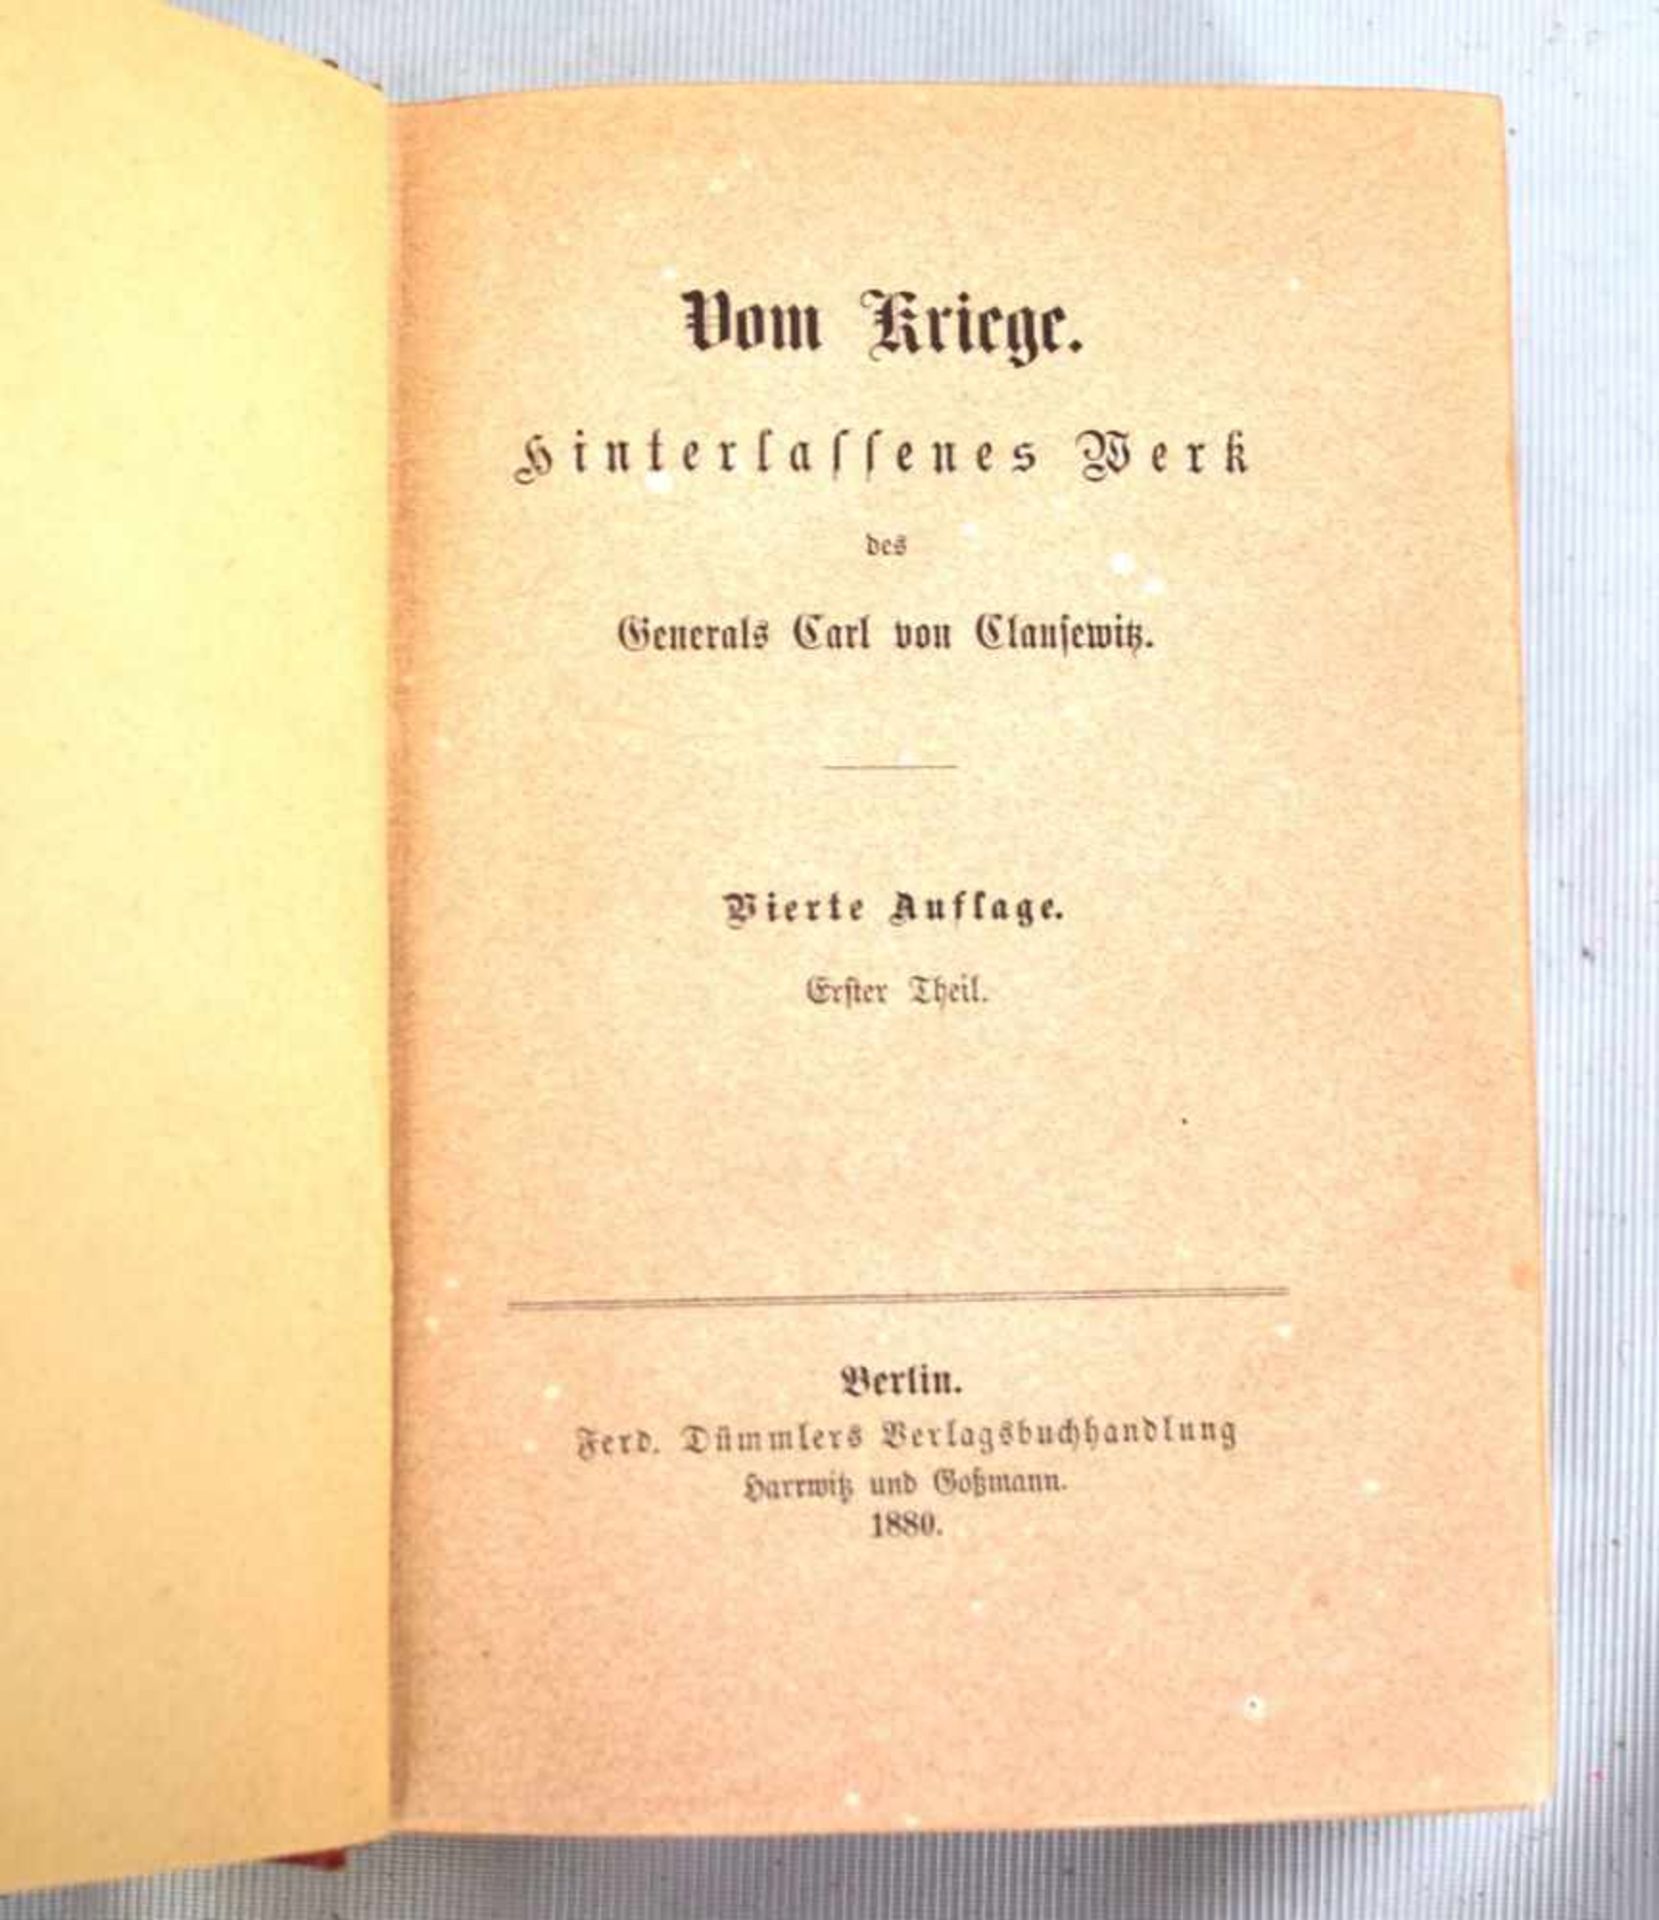 Vom KriegeGeneral Carl von Clausewitz, 1. Auflage, Berlin 1888